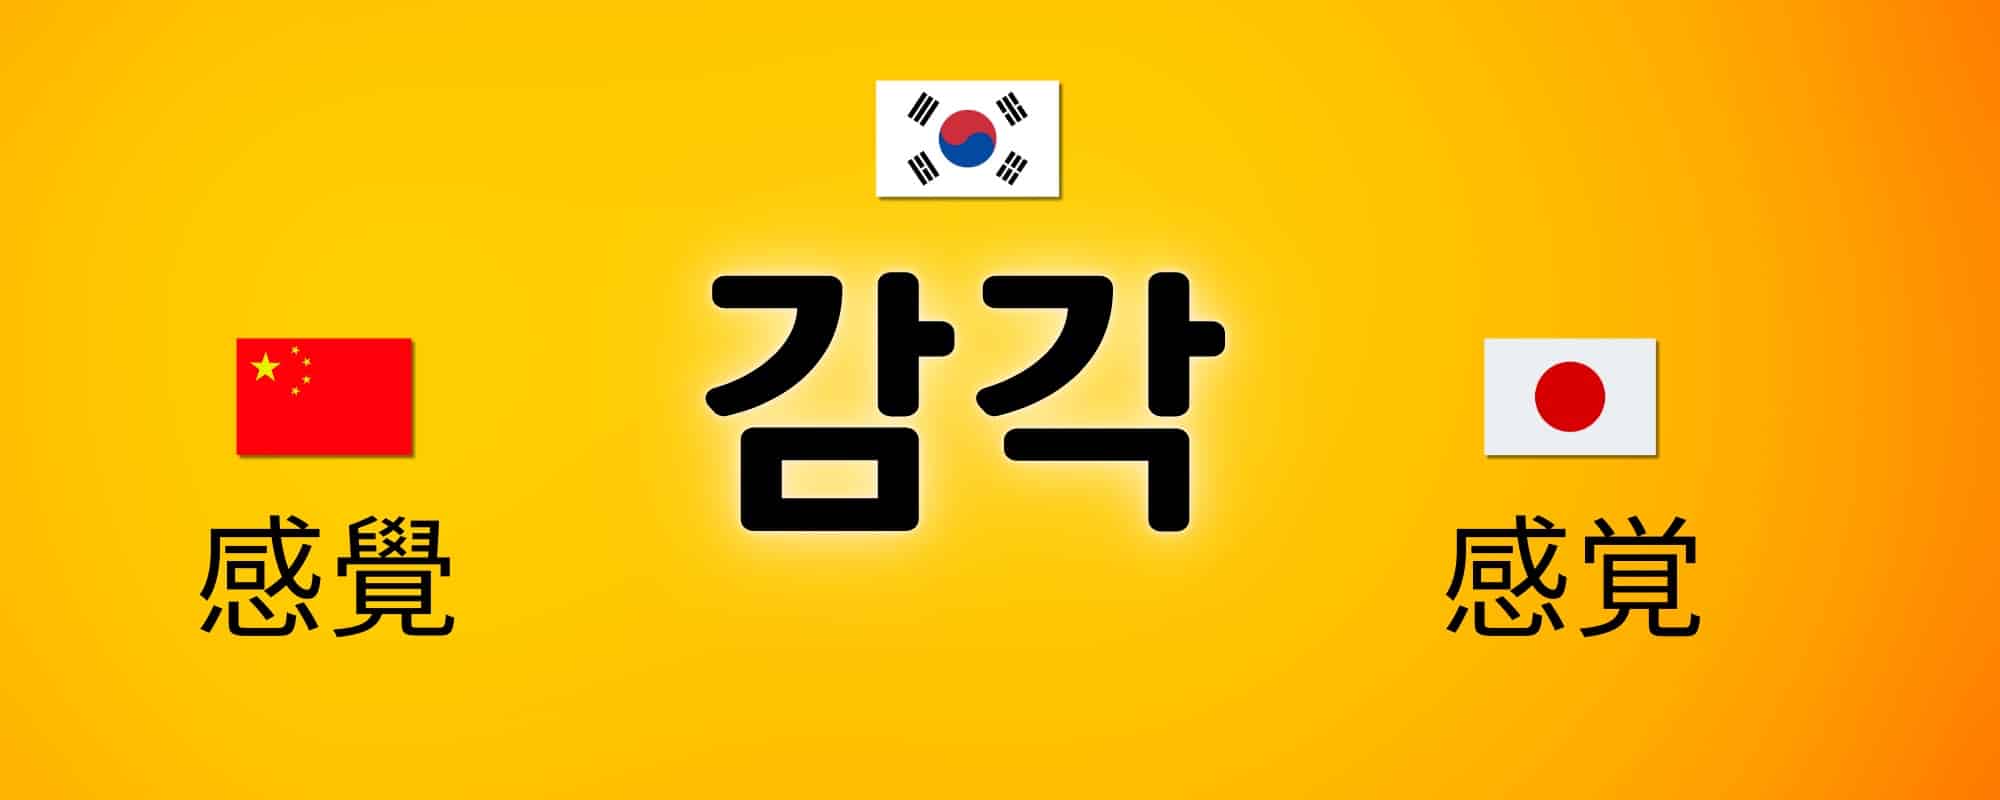 5 sentidos em coreano